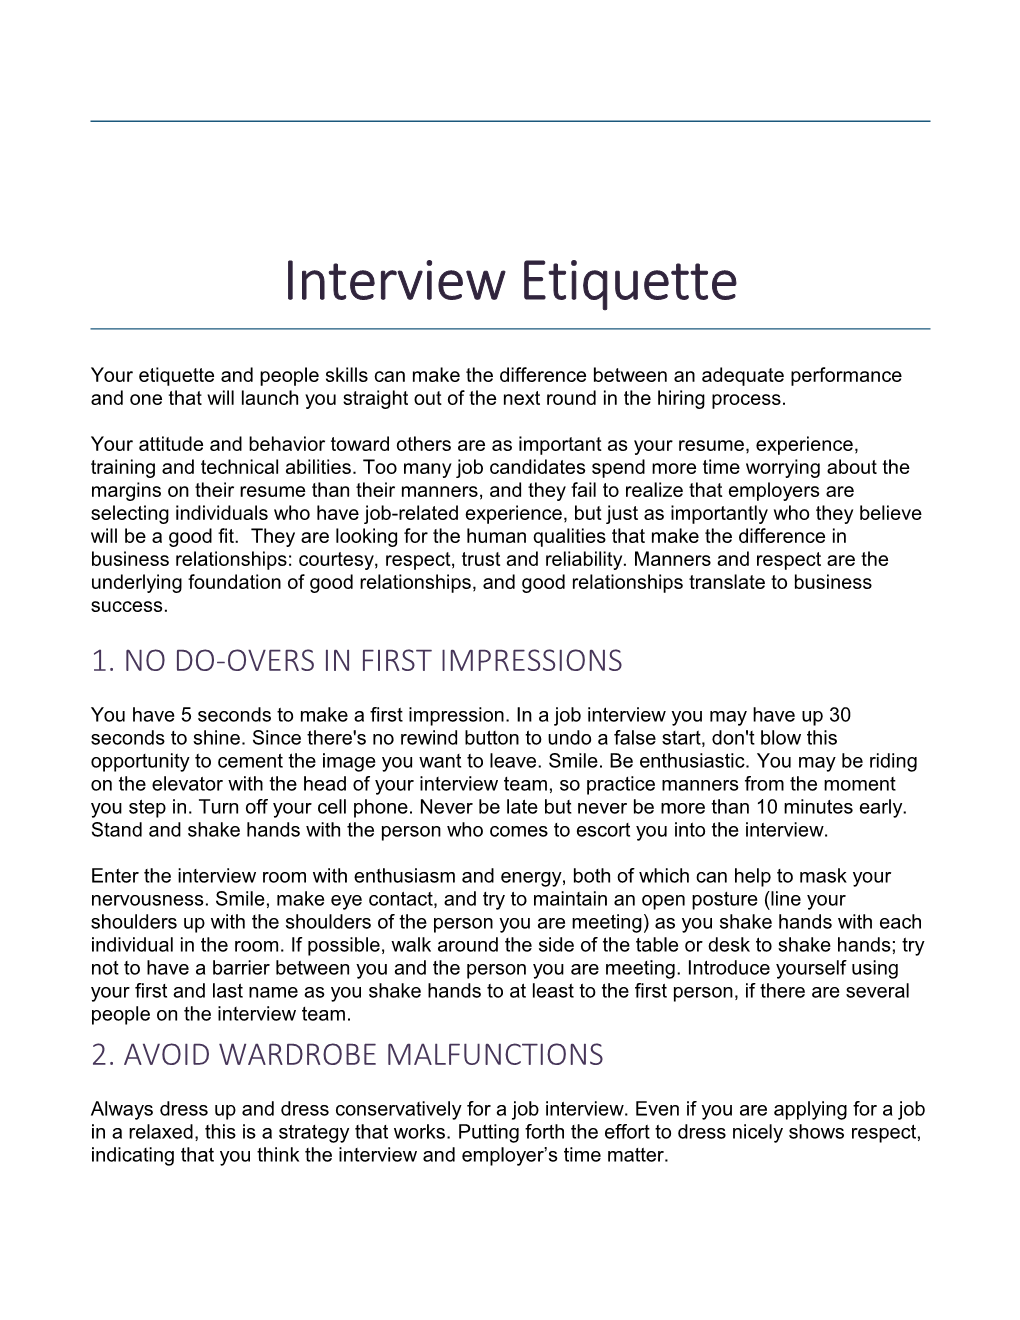 Interview Etiquette